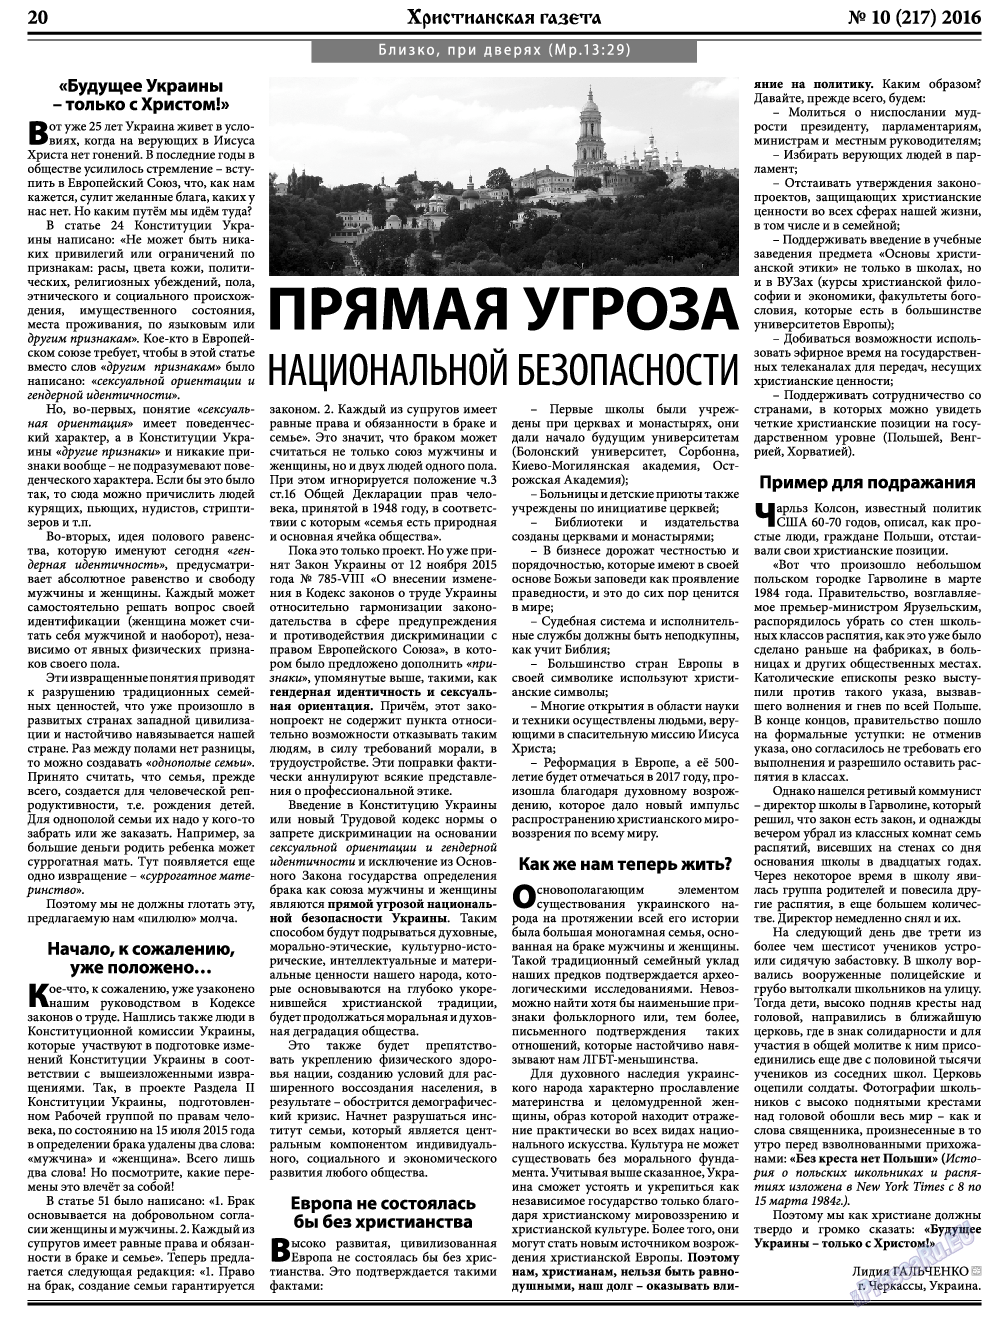 Христианская газета, газета. 2016 №10 стр.28